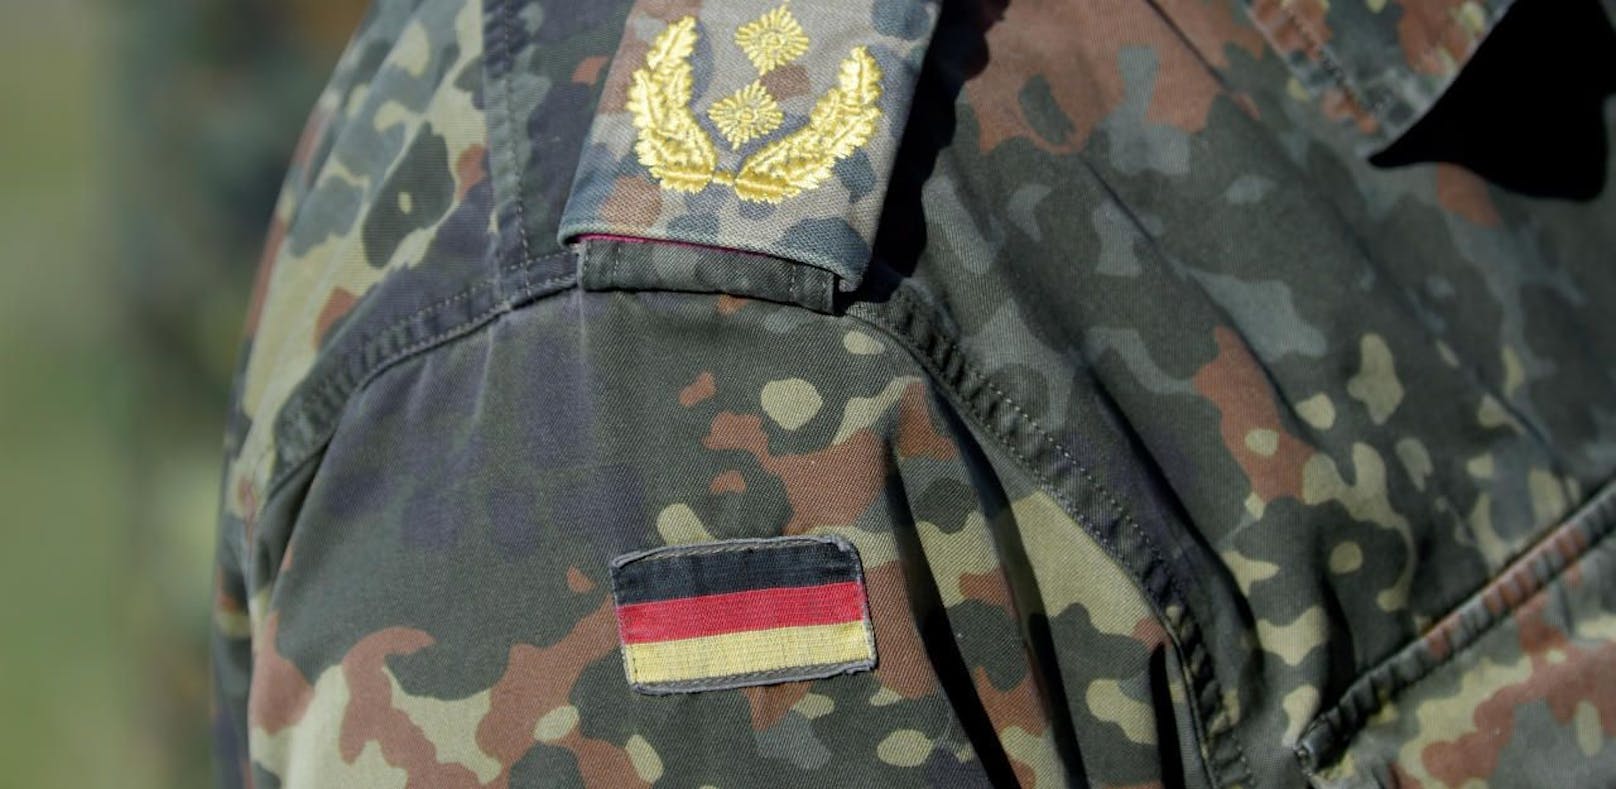 Ein Bundeswehrsoldat mit türkischen Wurzeln wurde in Berlin-Neukölln attackiert